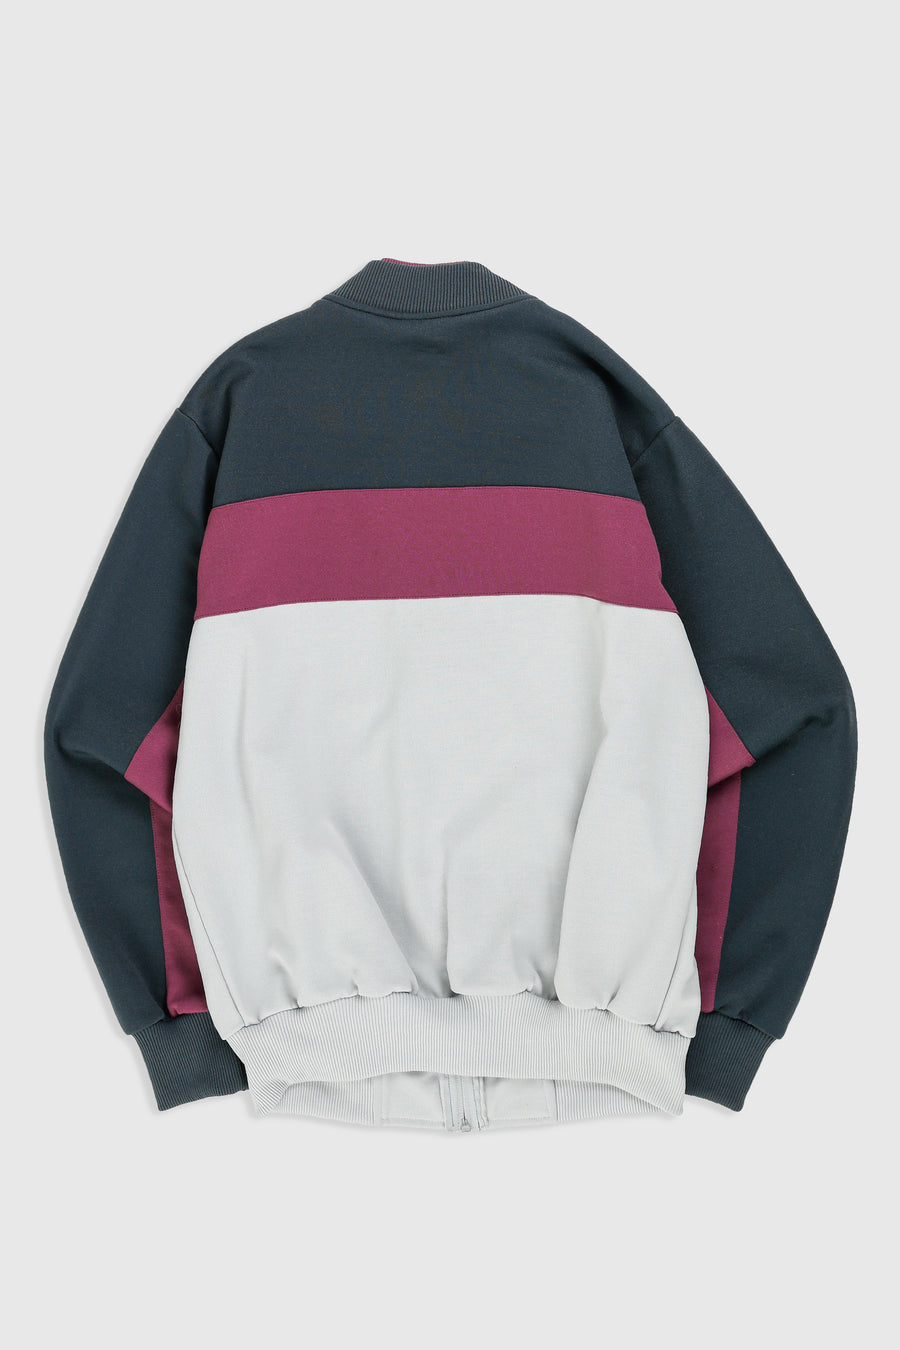 Vintage Adidas Sweatshirt - M